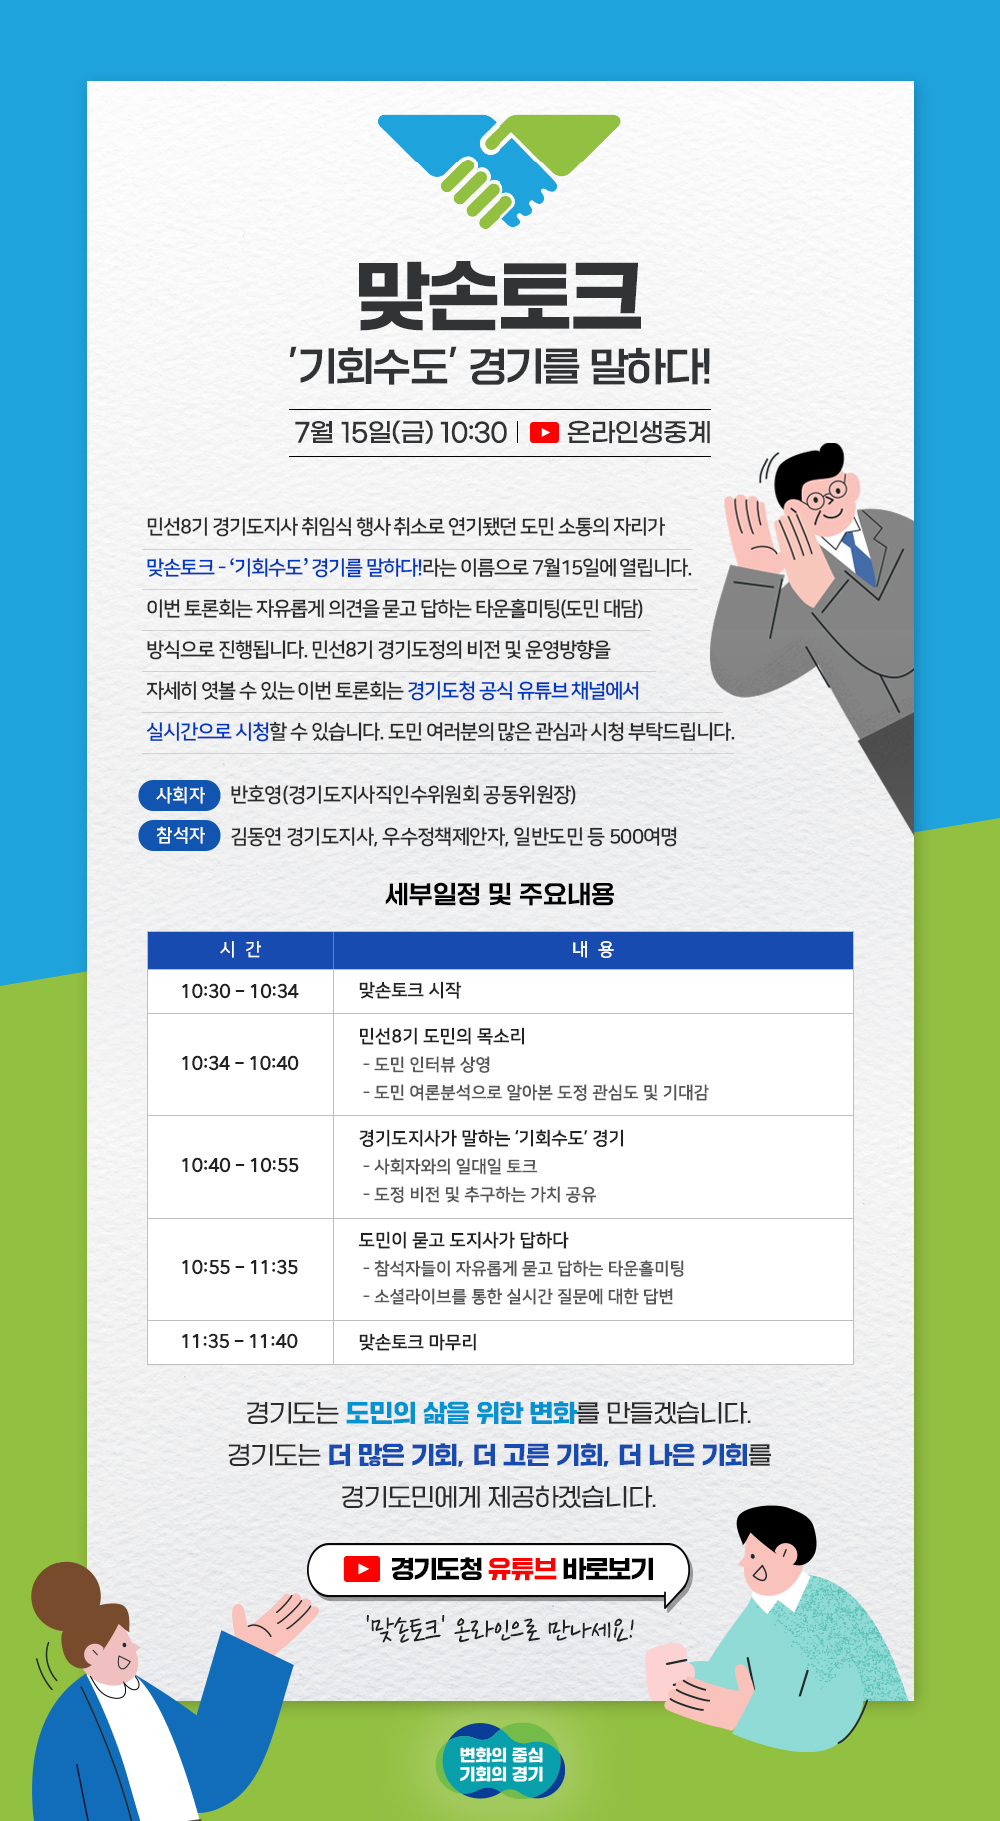 민선8기 경기도지사 도민대담회가 열립니다!